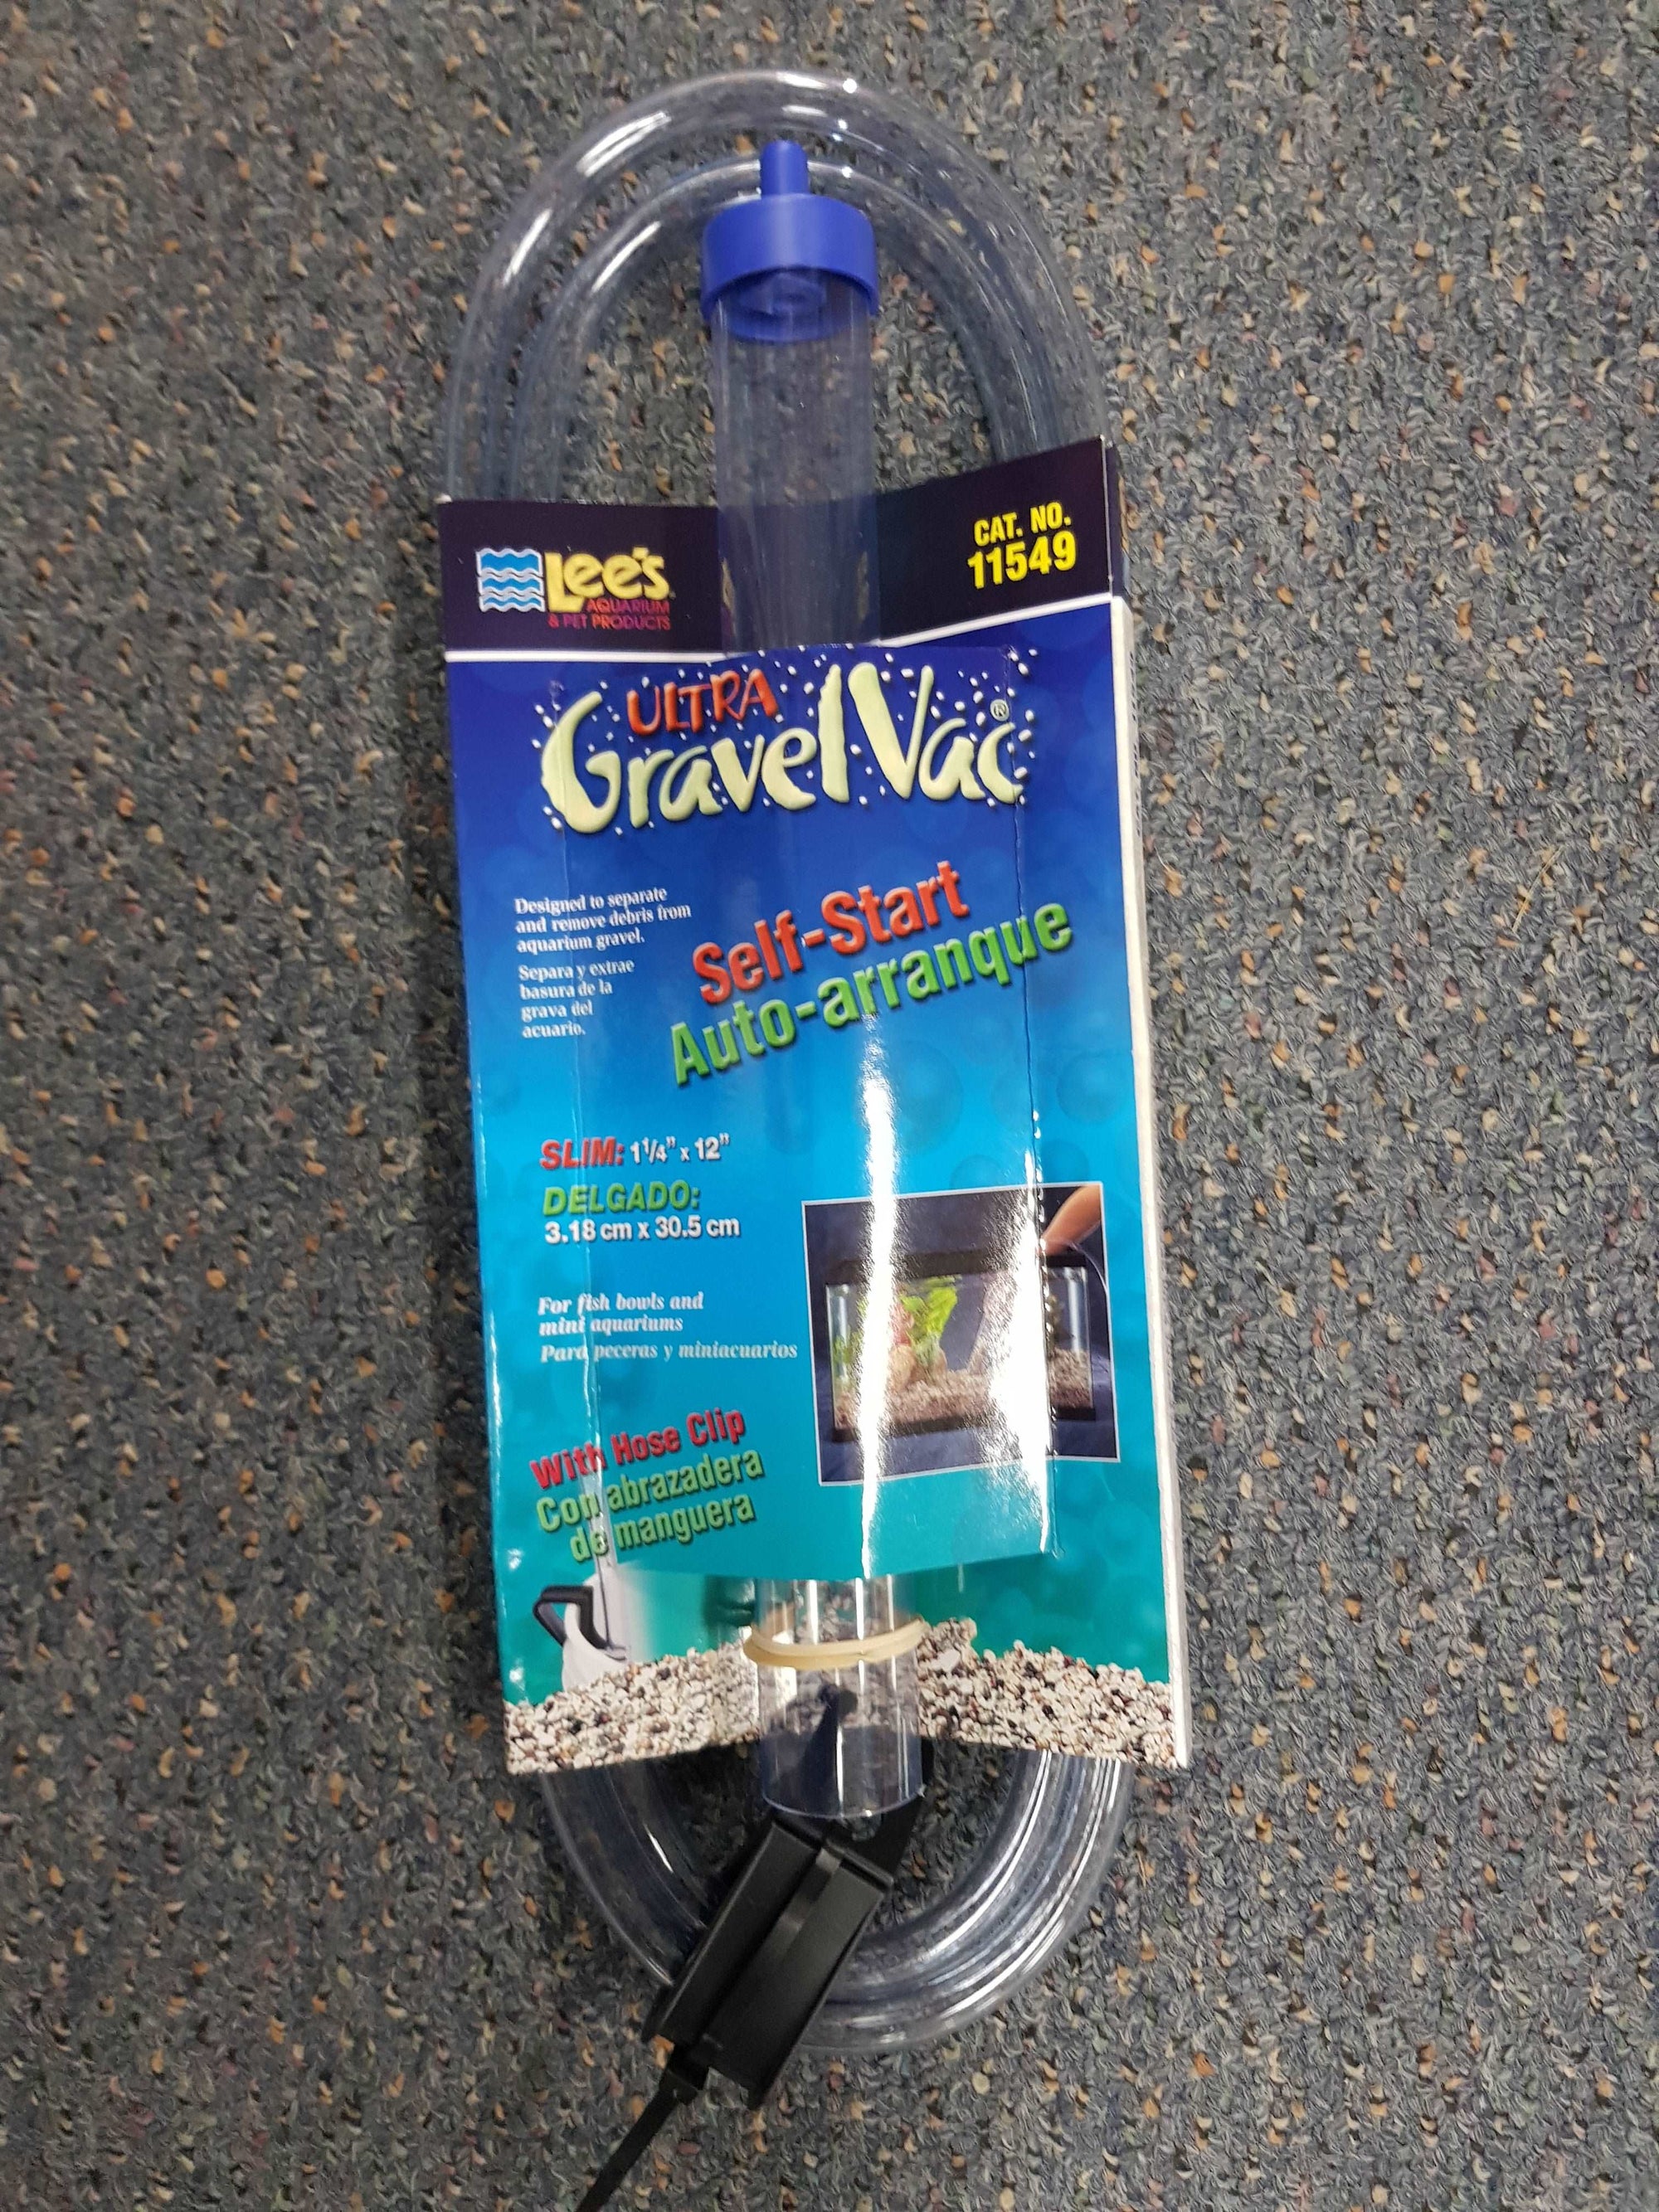 Lee's Ultra Gravel Vac gravel cleaner